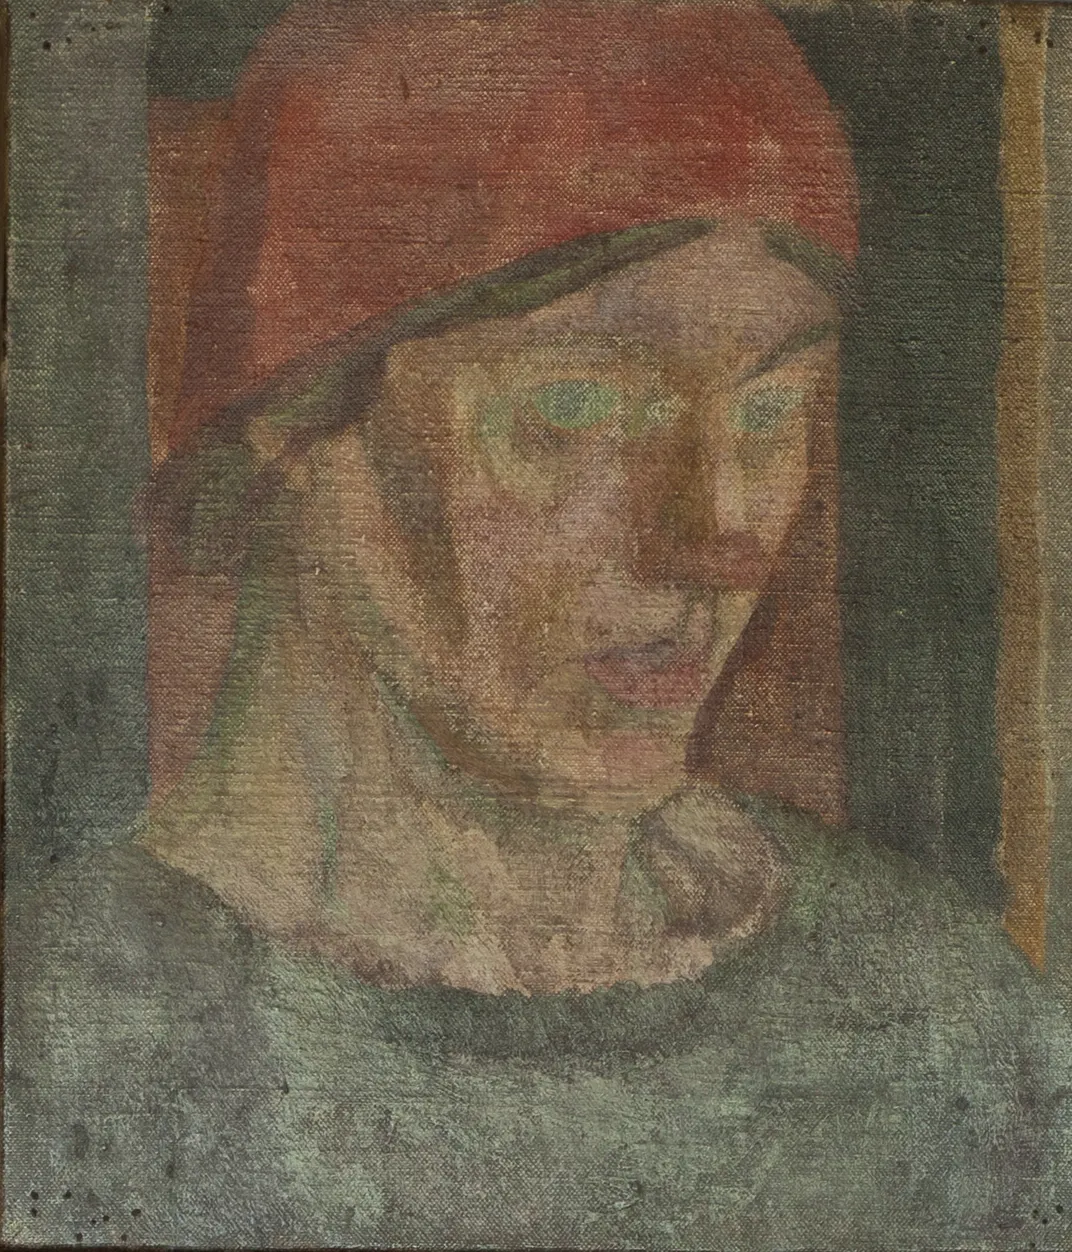 Duncan Grant's portrait of Vanessa Bell (c. 1917)